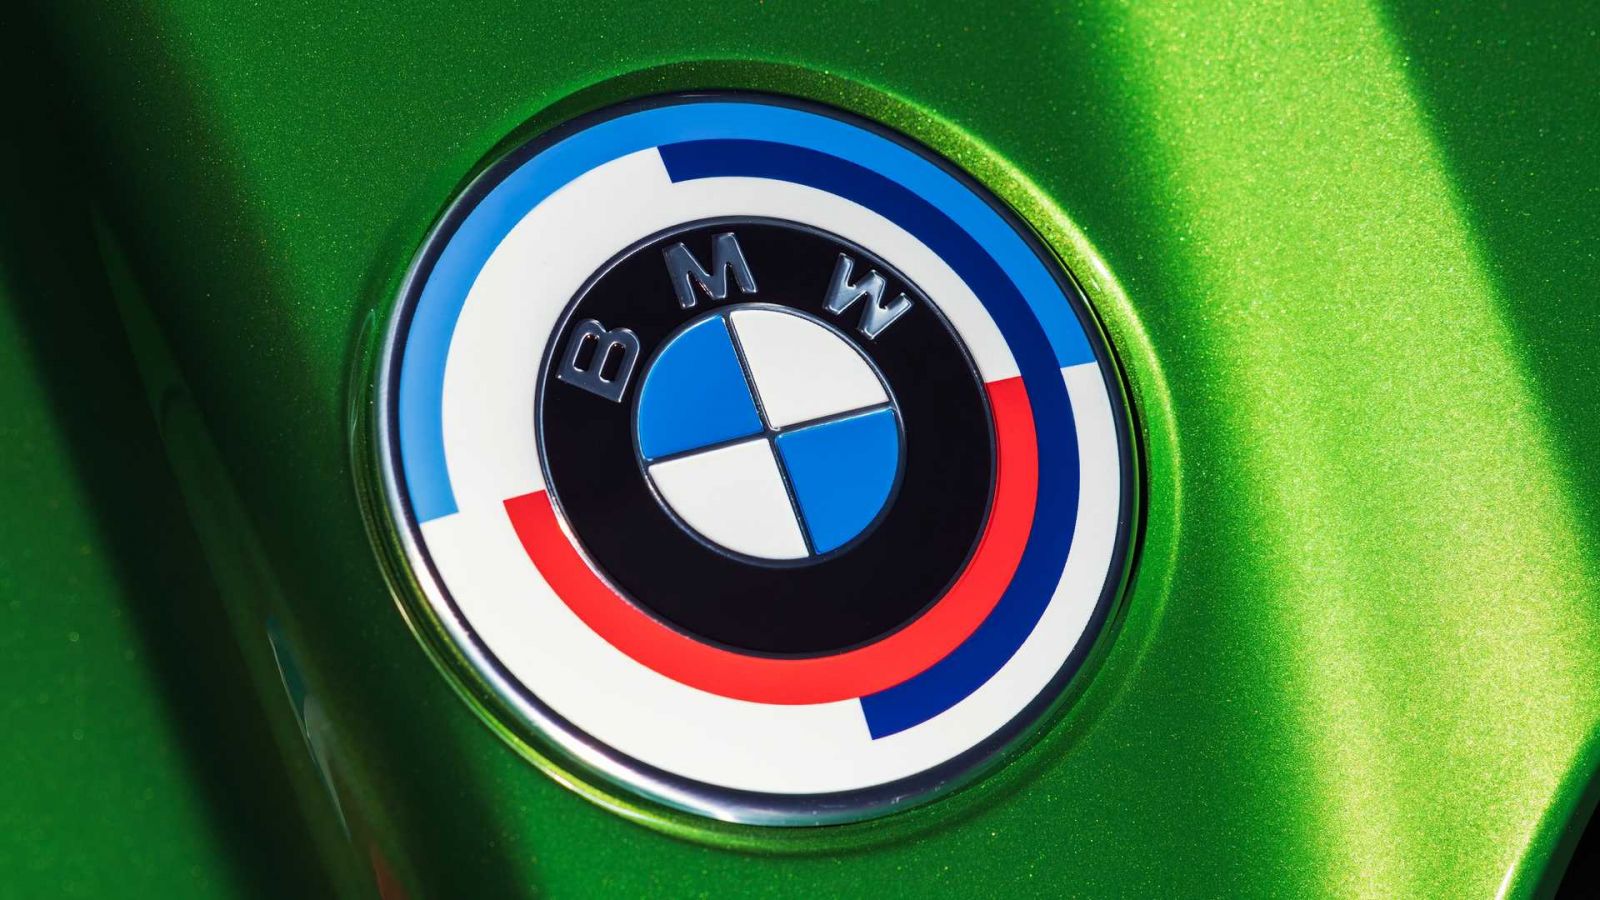 Xe hiệu suất cao BMW M là biểu tượng của sự sang trọng, tốc độ và sức mạnh. Những hình ảnh về chiếc xe này sẽ khiến bạn thực sự mãn nhãn với thiết kế đẹp mắt, động cơ cực mạnh và các tính năng hiện đại. Hãy xem hình ảnh liên quan để tận hưởng cảm giác đắm chìm trong công nghệ xe hơi tiên tiến.